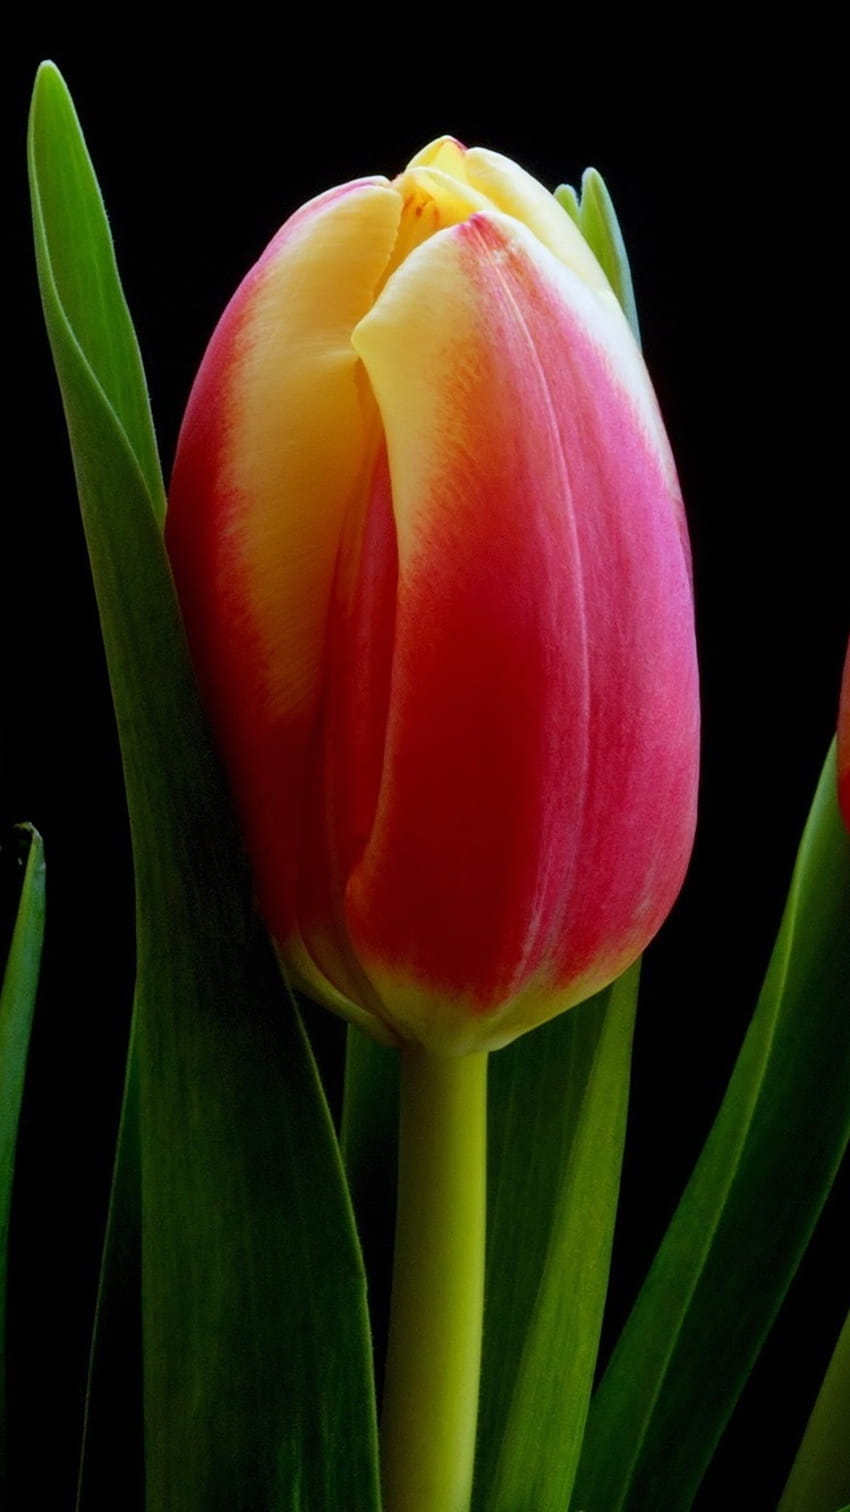 Fiori di tulipano giallo arancio rosso, sfondi neri 2560x1600, iphone tulipano scuro Sfondo del telefono HD